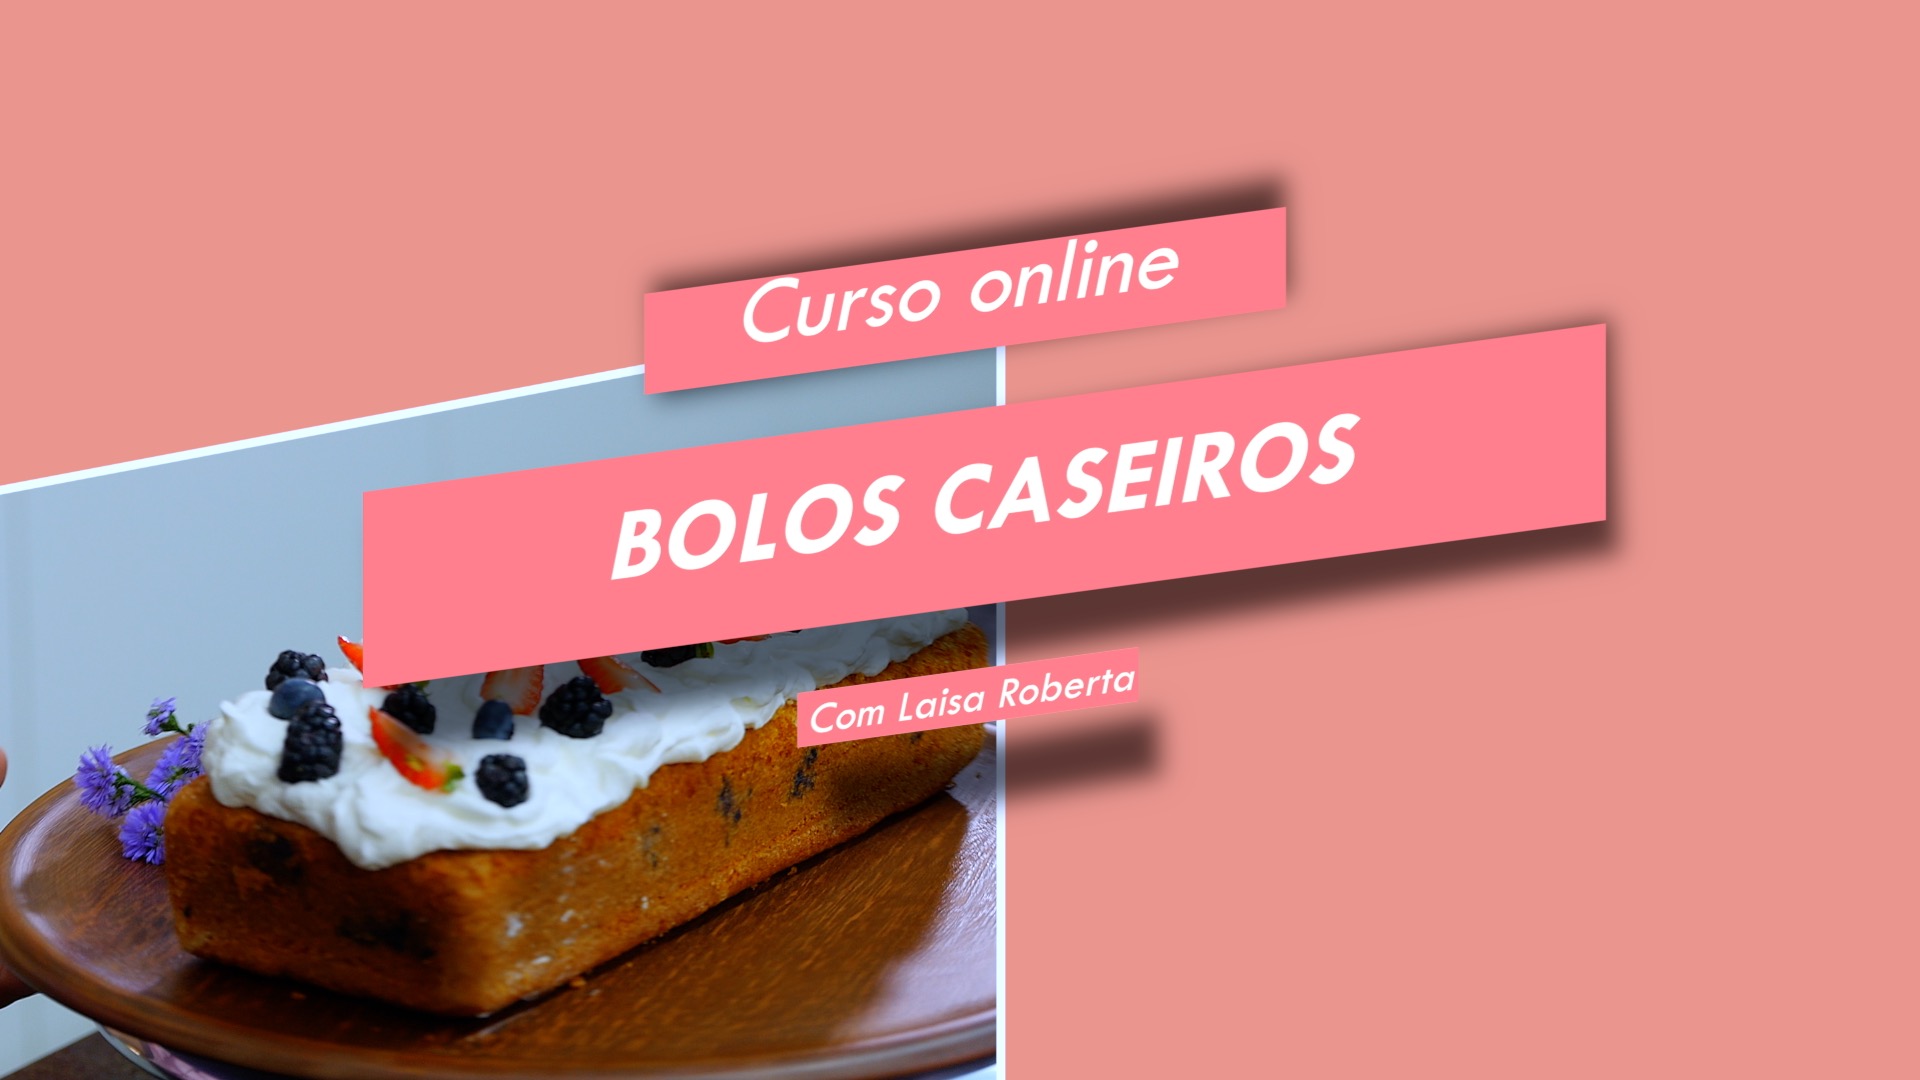 BOLOS CASEIROS